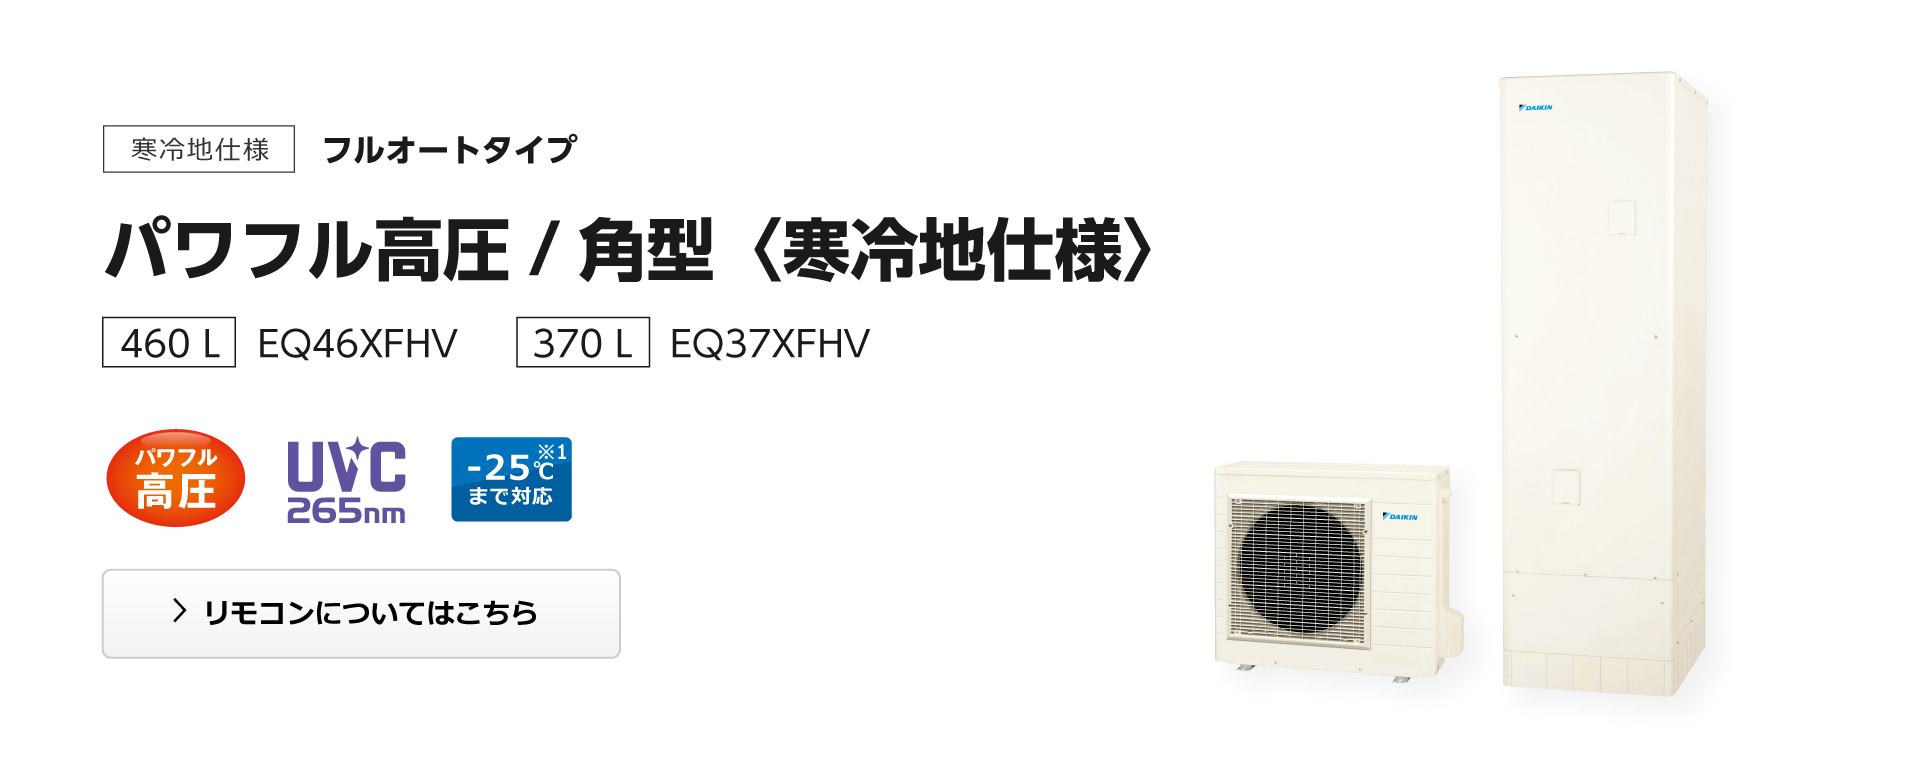  ダイキン エコキュート EQ46WFHV フルオート パワフル高圧 460L 一般地 ・ 寒冷地 兼用 - 1